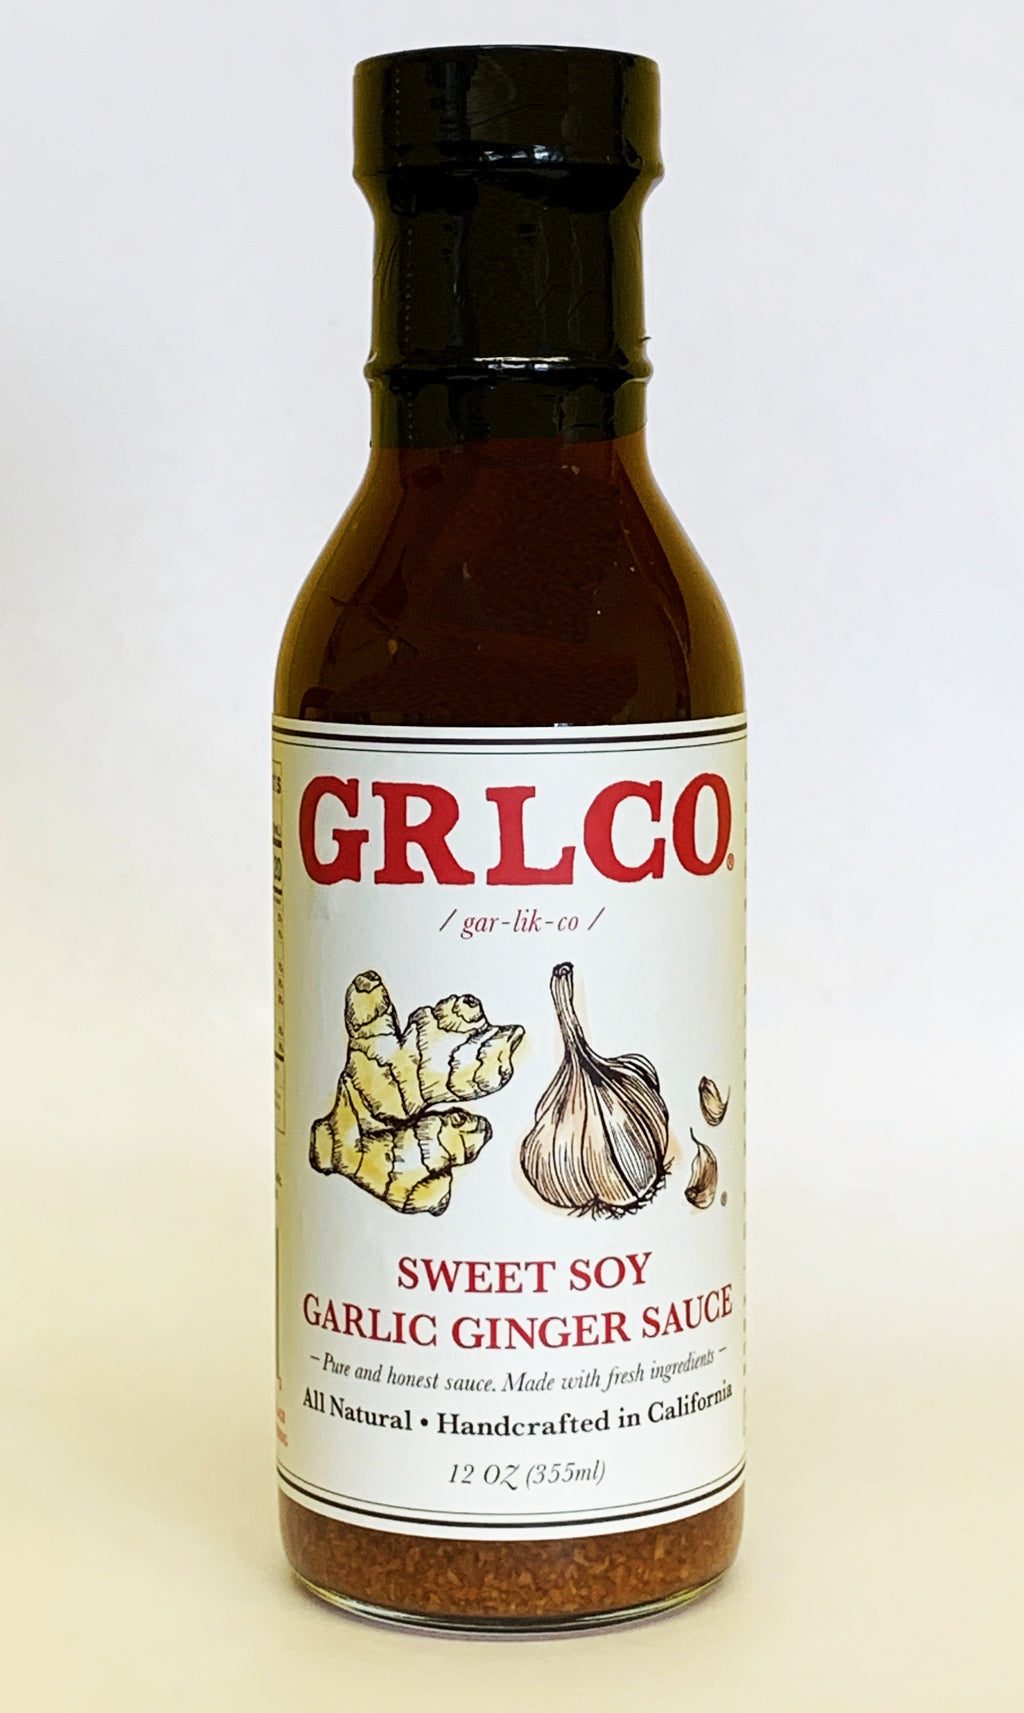 GRLCO Sweet Garlic Ginger Sauce.